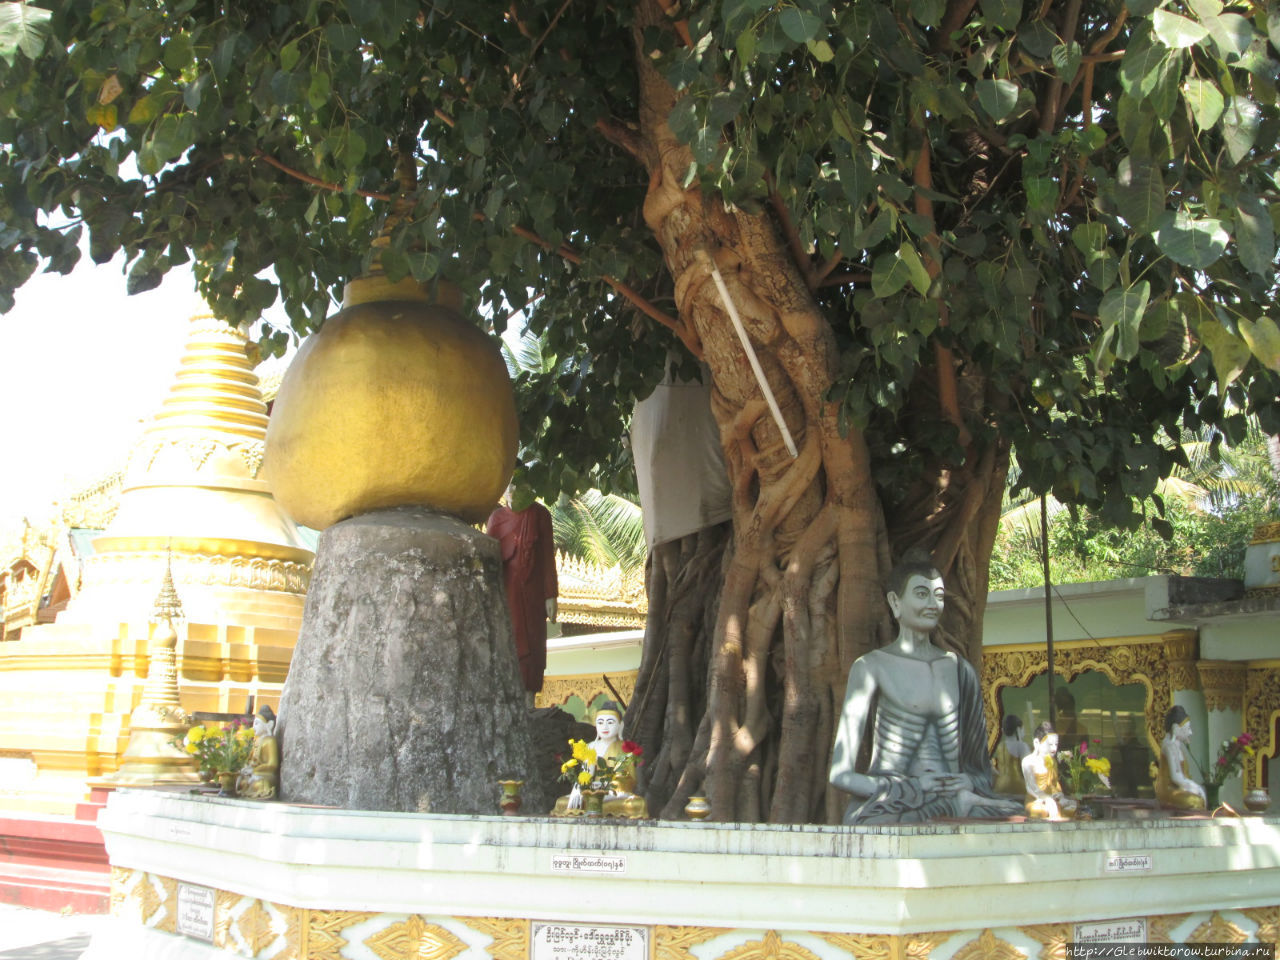 Крупнейшая пагода города и окрестностей Таунгу, Мьянма